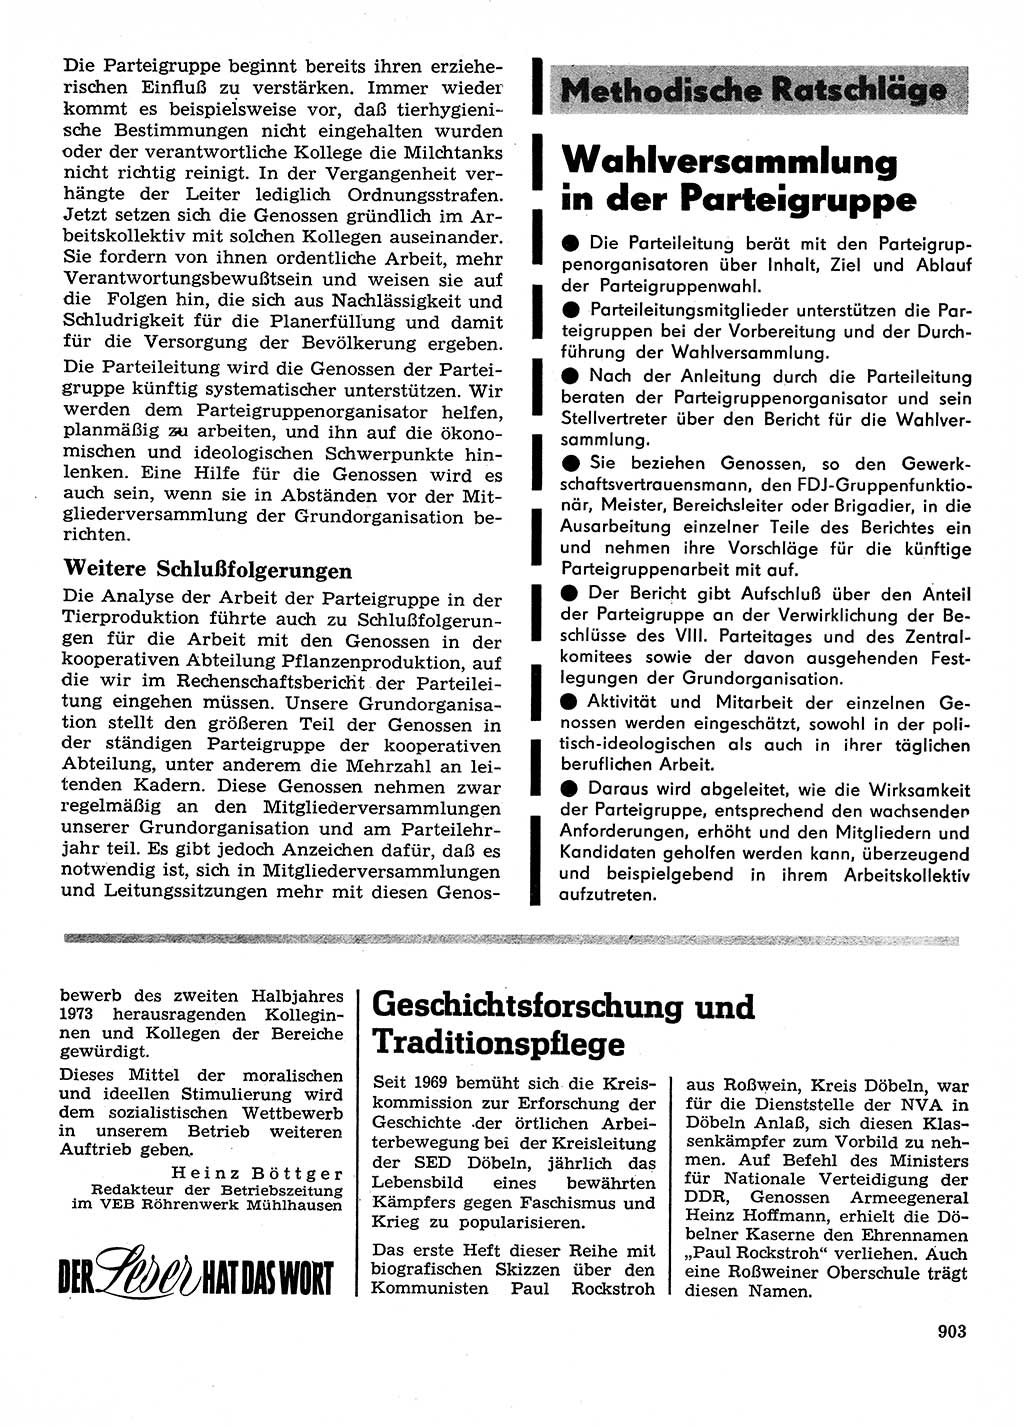 Neuer Weg (NW), Organ des Zentralkomitees (ZK) der SED (Sozialistische Einheitspartei Deutschlands) für Fragen des Parteilebens, 28. Jahrgang [Deutsche Demokratische Republik (DDR)] 1973, Seite 903 (NW ZK SED DDR 1973, S. 903)